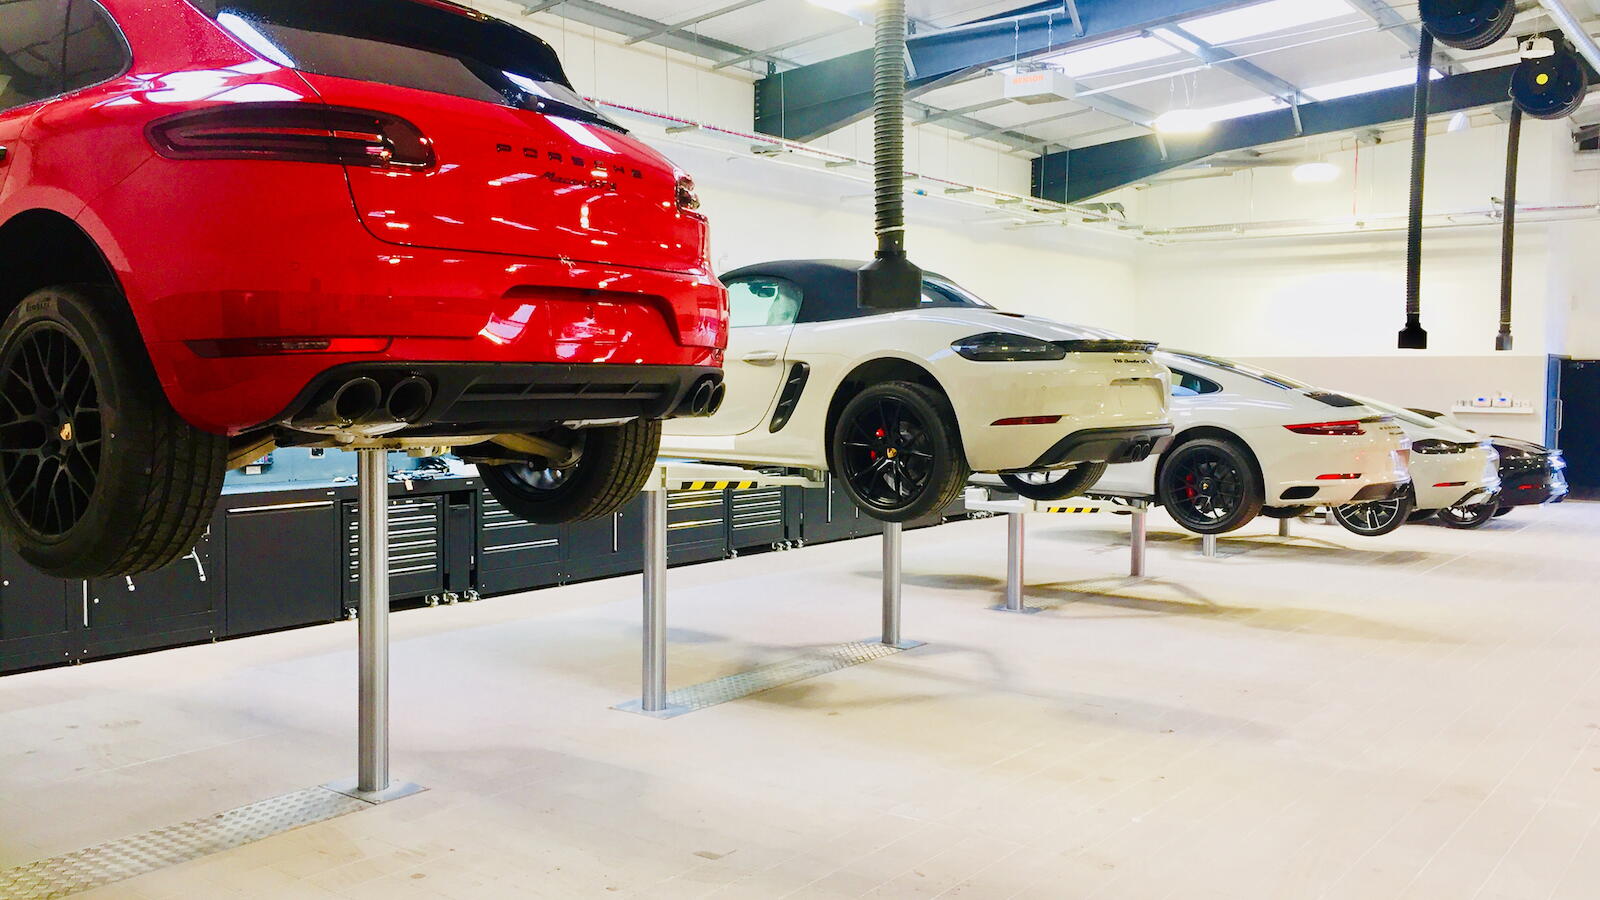 Porsche Centre, Perth - UK